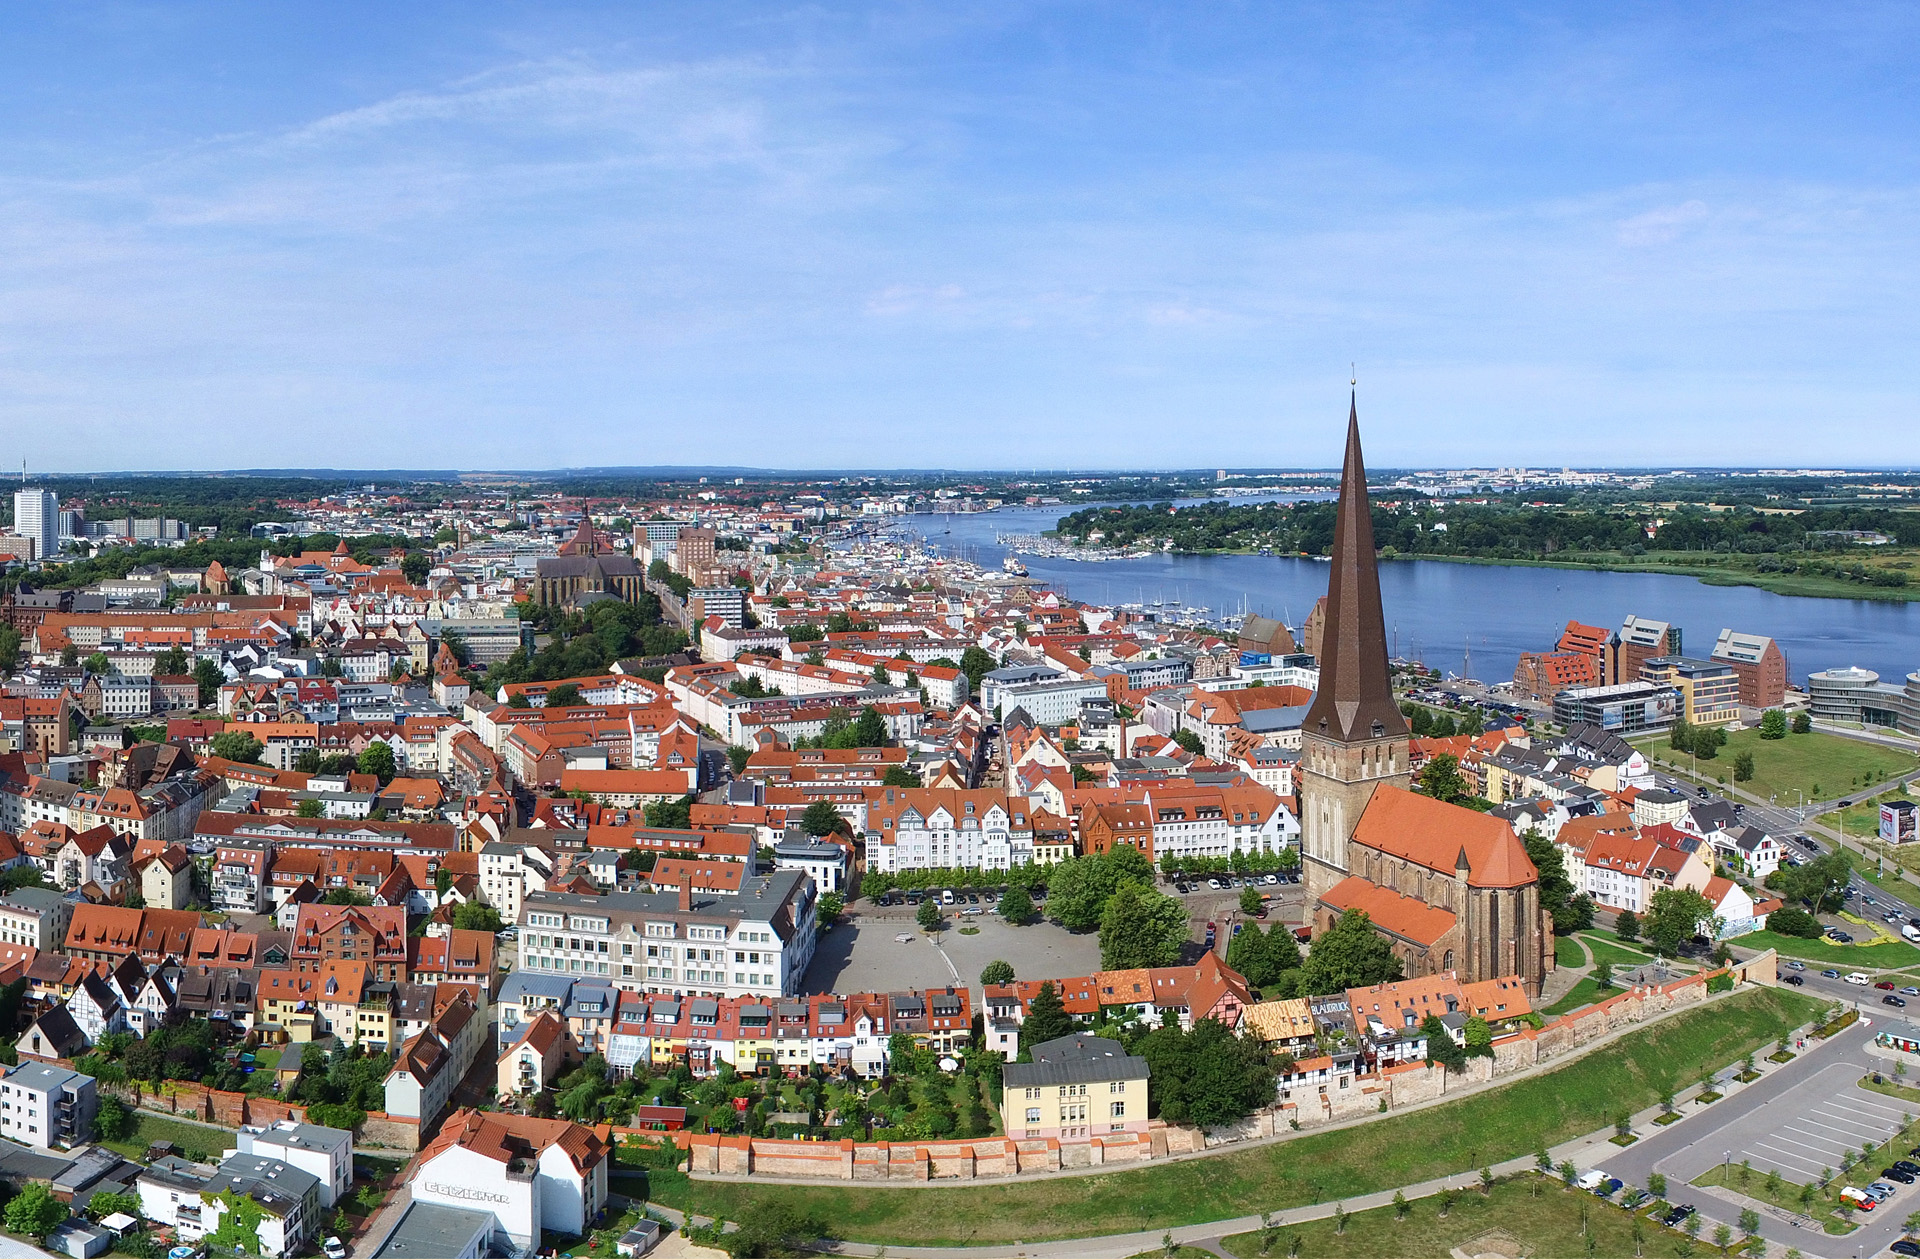 Blick auf die Östliche Altstadt © Rostock Marketing /S. Krauleidis